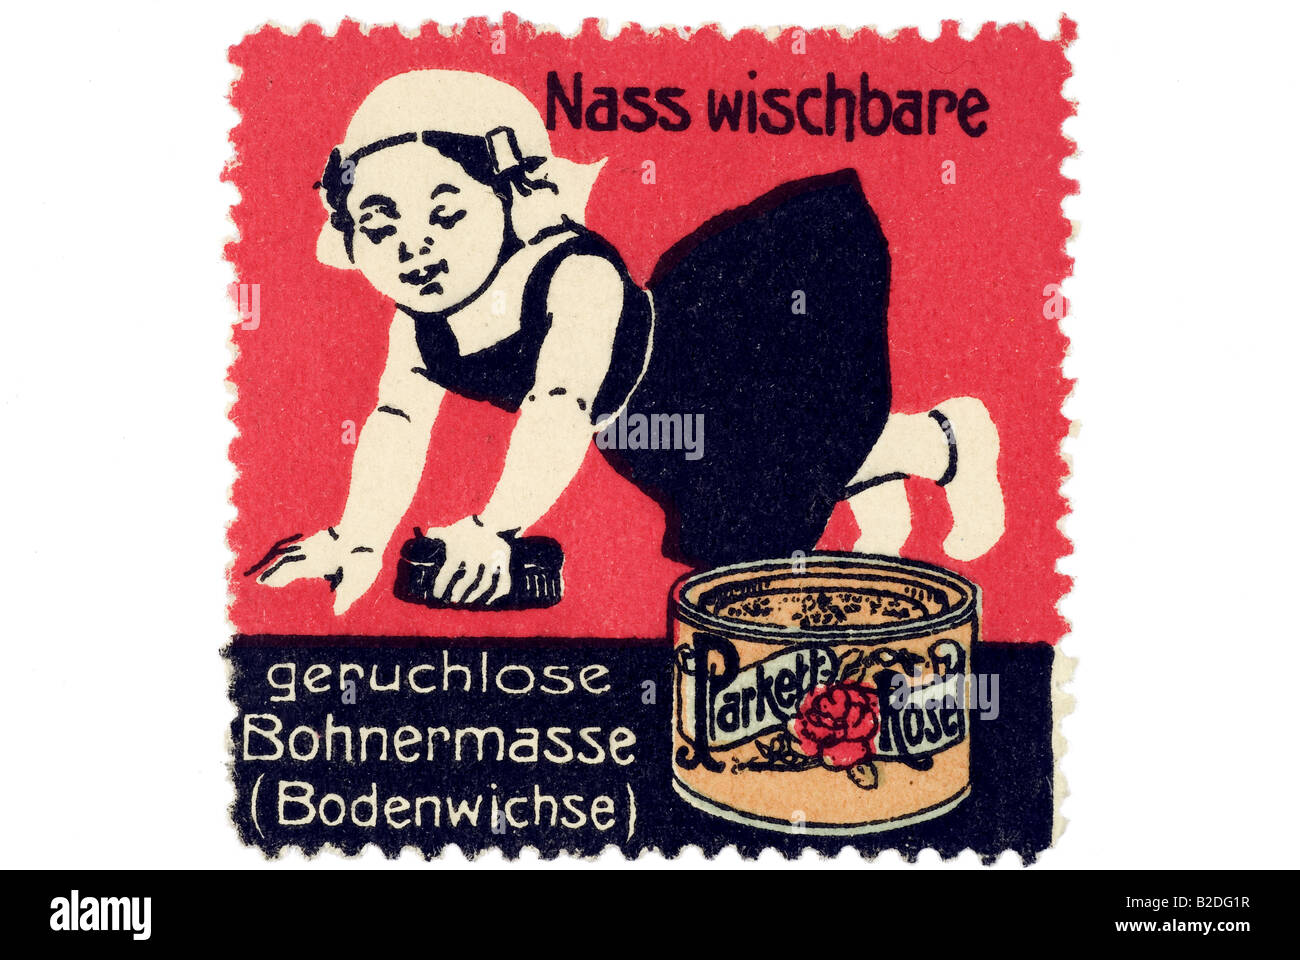 trading stamp Parkett Rose Nass wischbare geruchlose Bohnermasse Bodenwichse Stock Photo